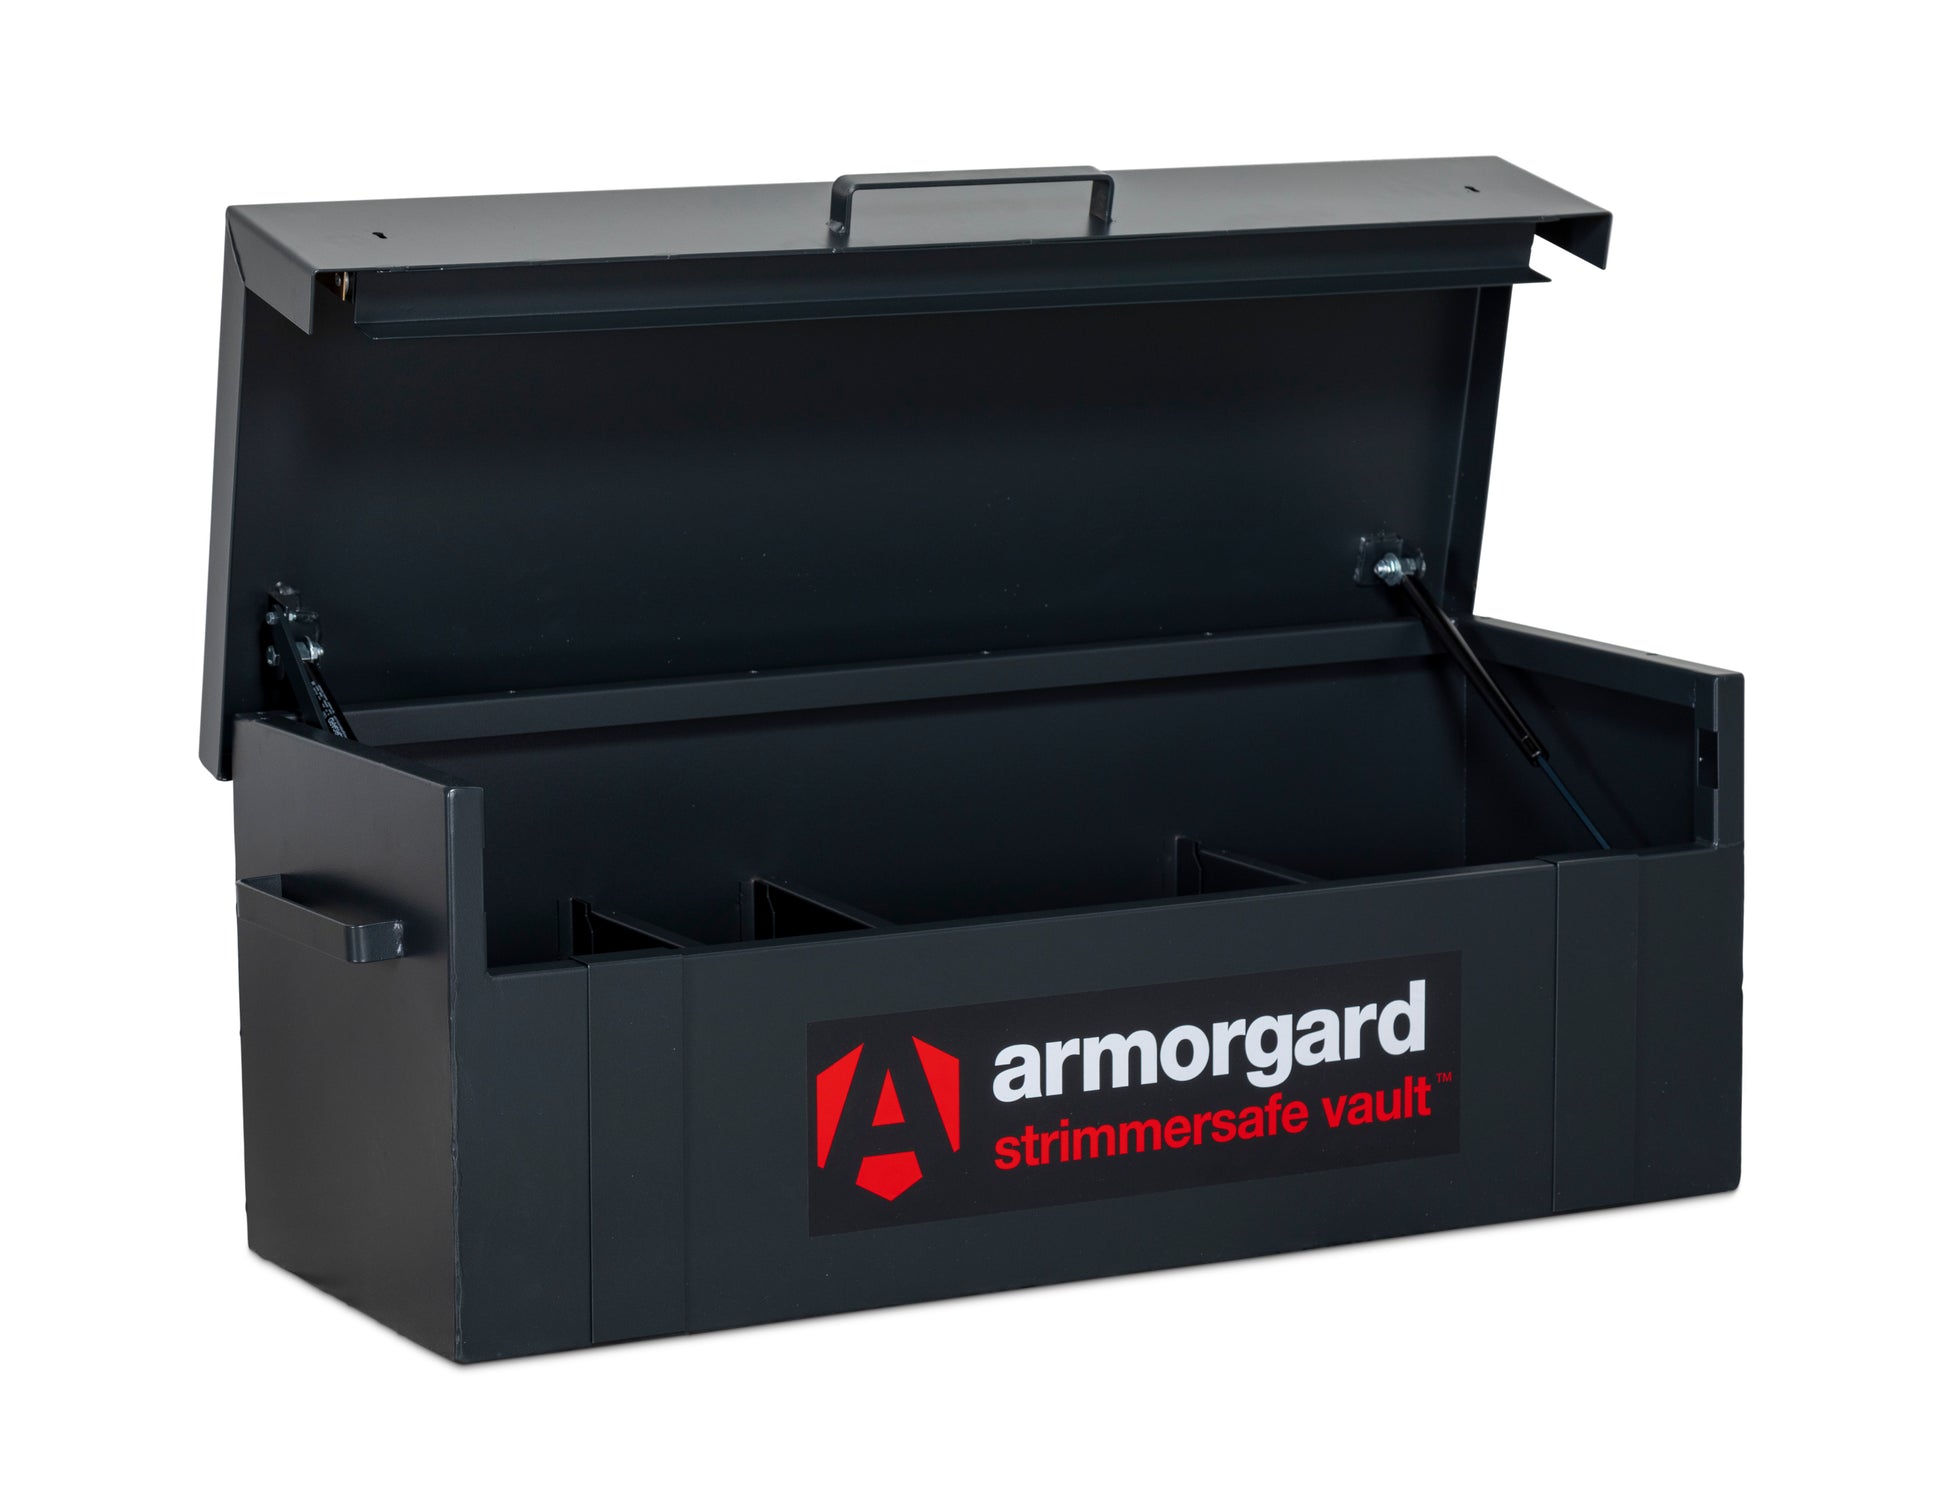 Armorgard - STRIMMERSAFE VAULT StrimmerSafe Vault 1275x515x450